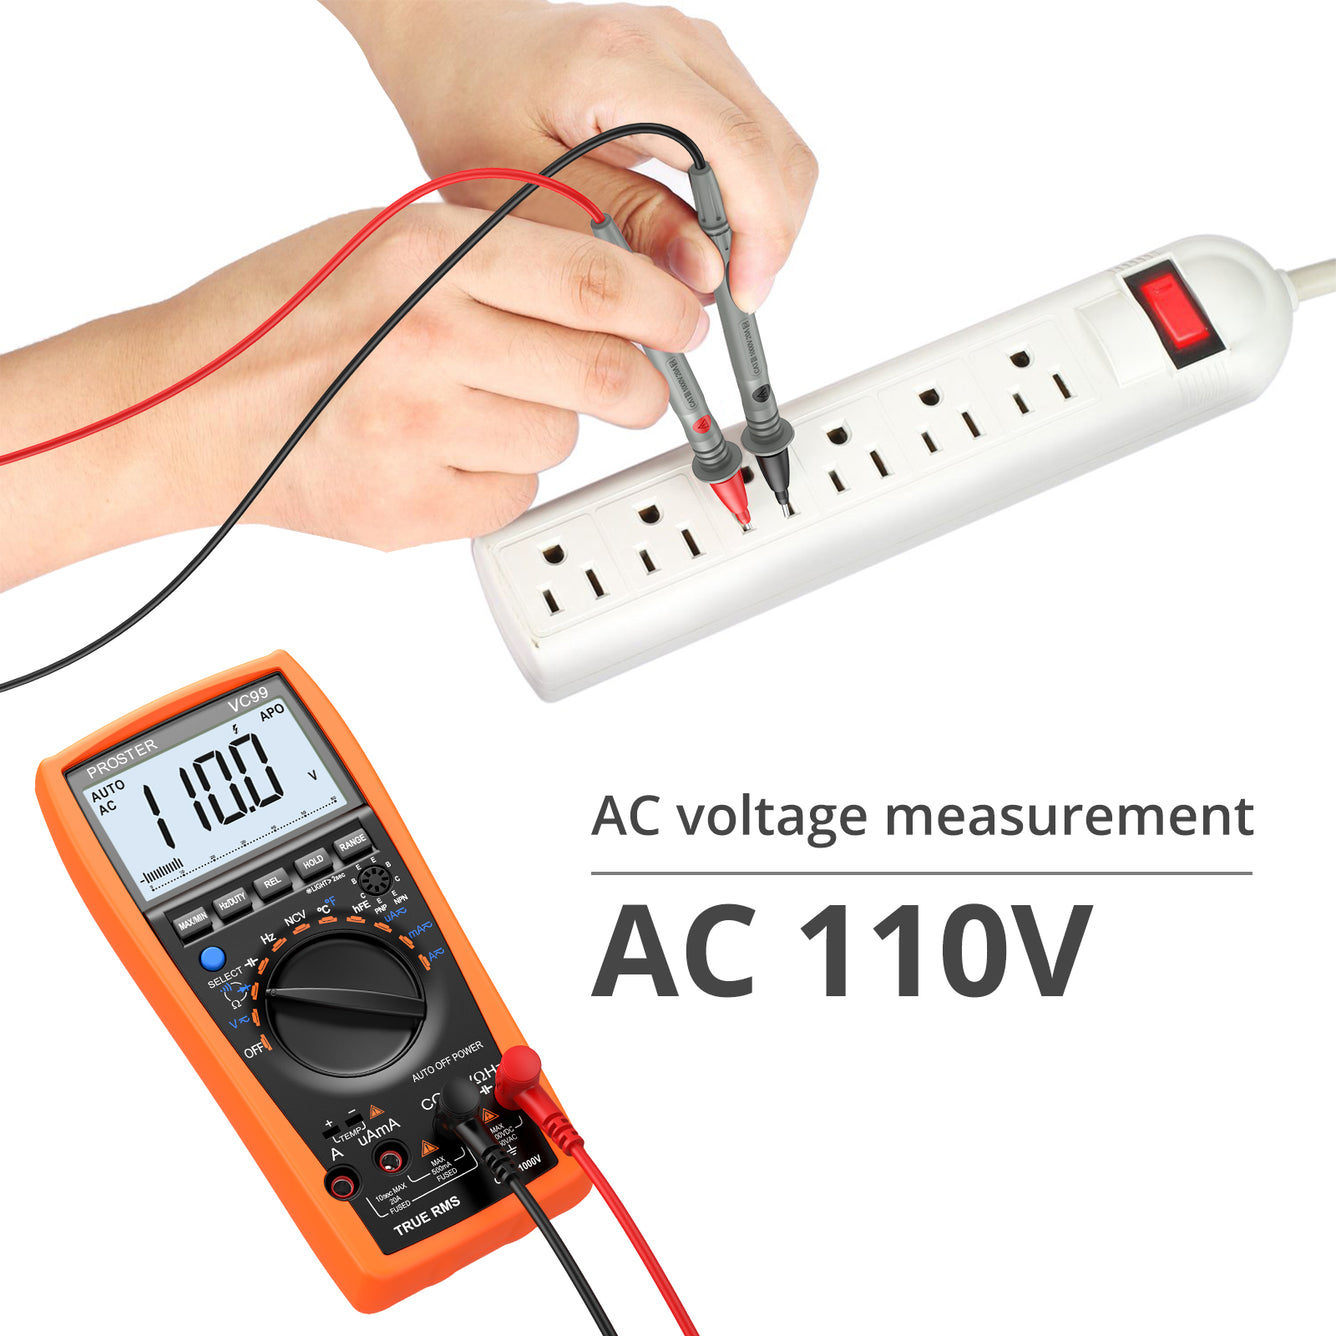 Proster Auto-Ranging 5999 Digital Multimeter with Temperature Measurement